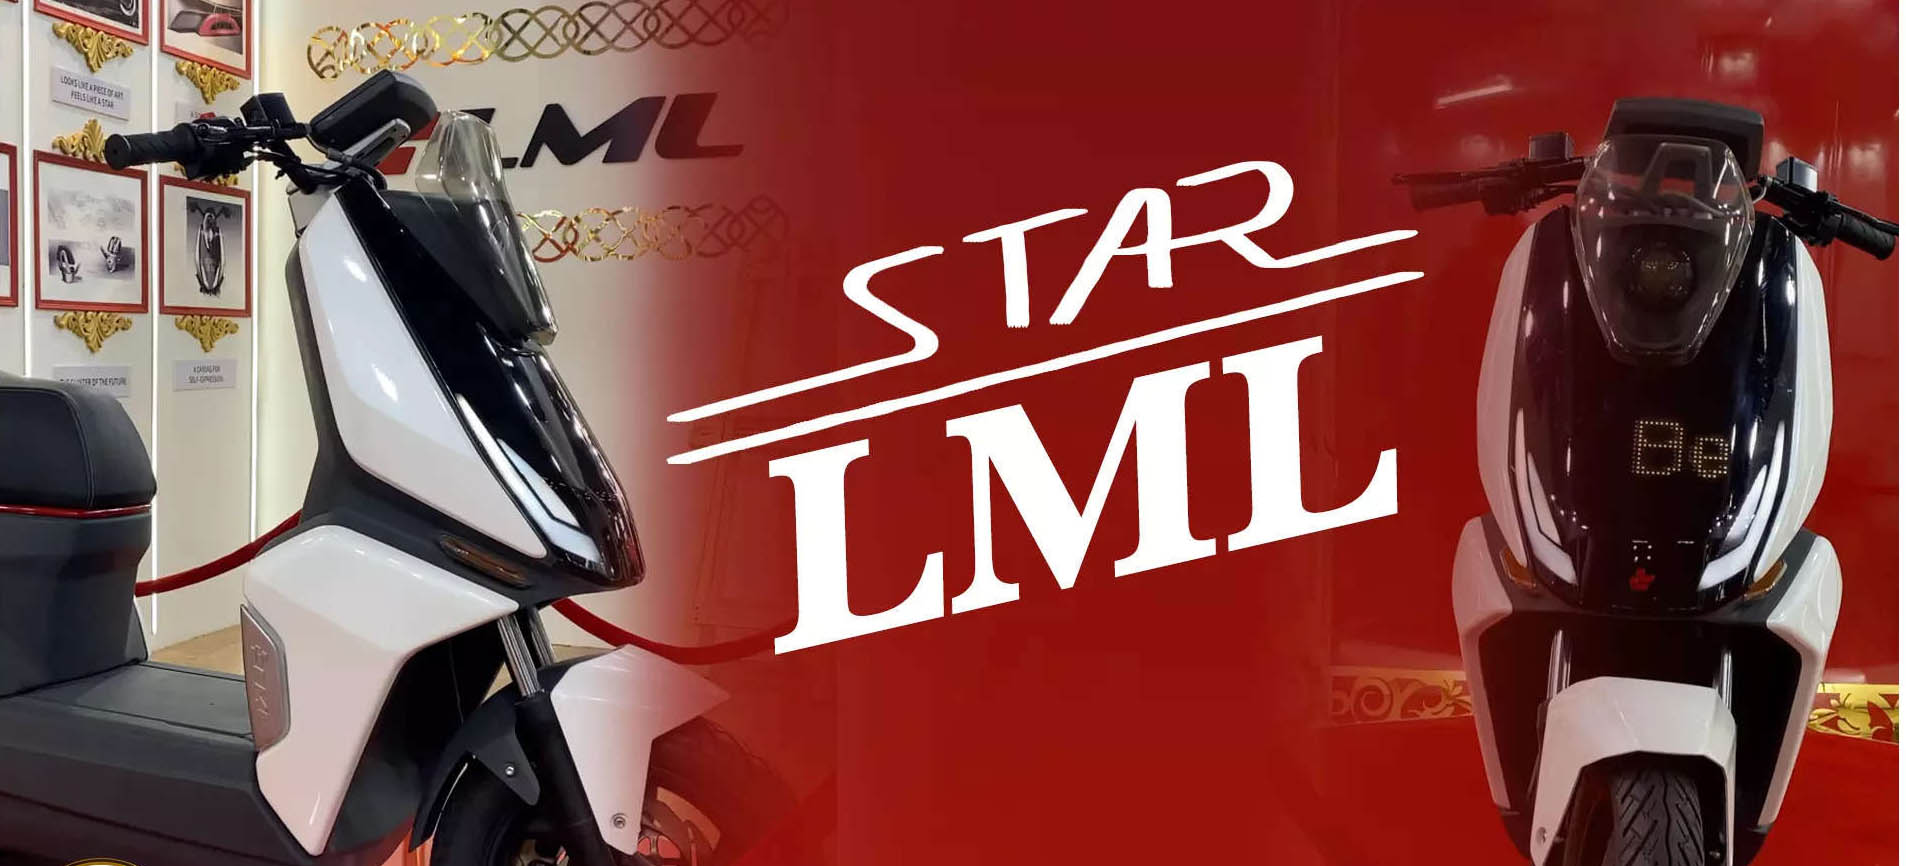 सबसे ज्यादा रेंज के साथ दिसंबर में लॉन्च होगी LML Star इलेक्ट्रिक स्कूटर, ओला और एथर की उड़ेगी नींद